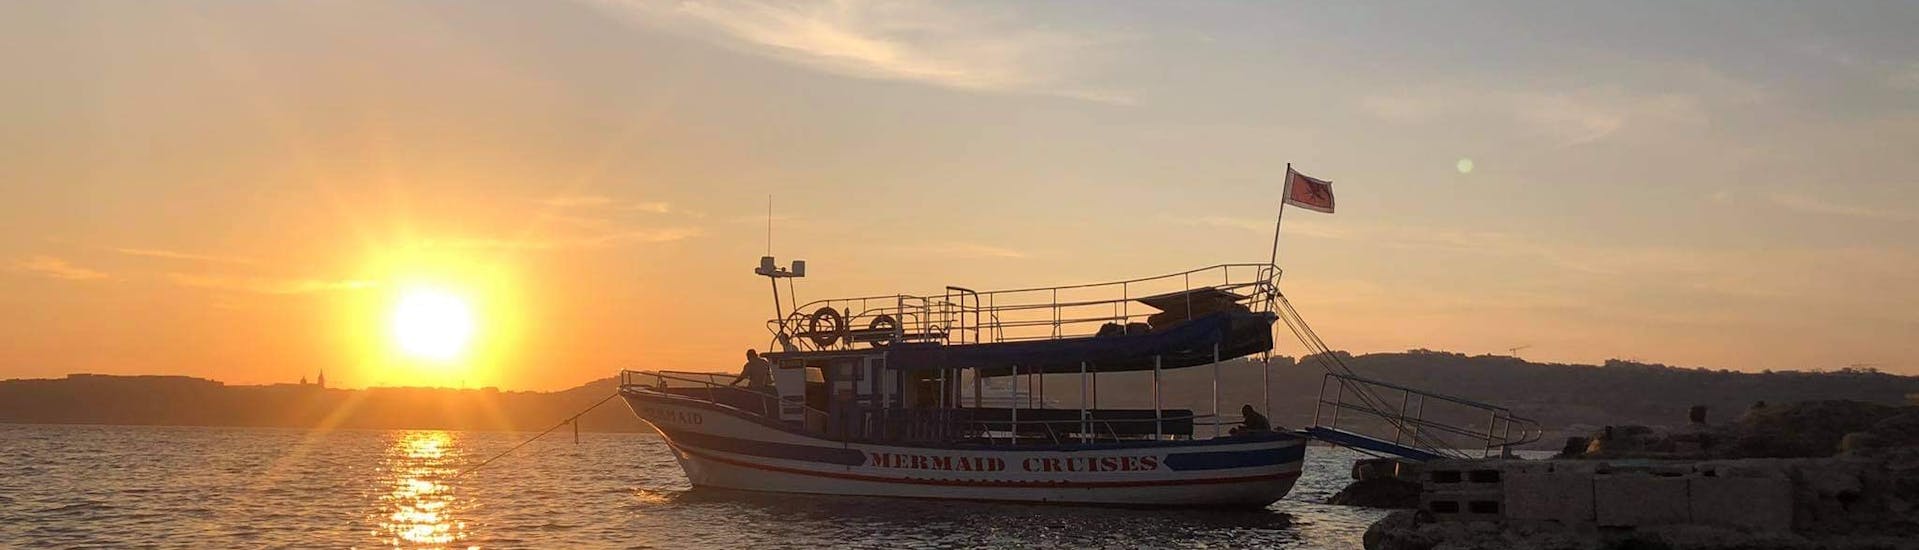 La nostra barca sull'acqua nel bel mezzo del tramonto durante la crociera al tramonto alla Laguna Blu di Comino con Mermaid Cruises Malta.